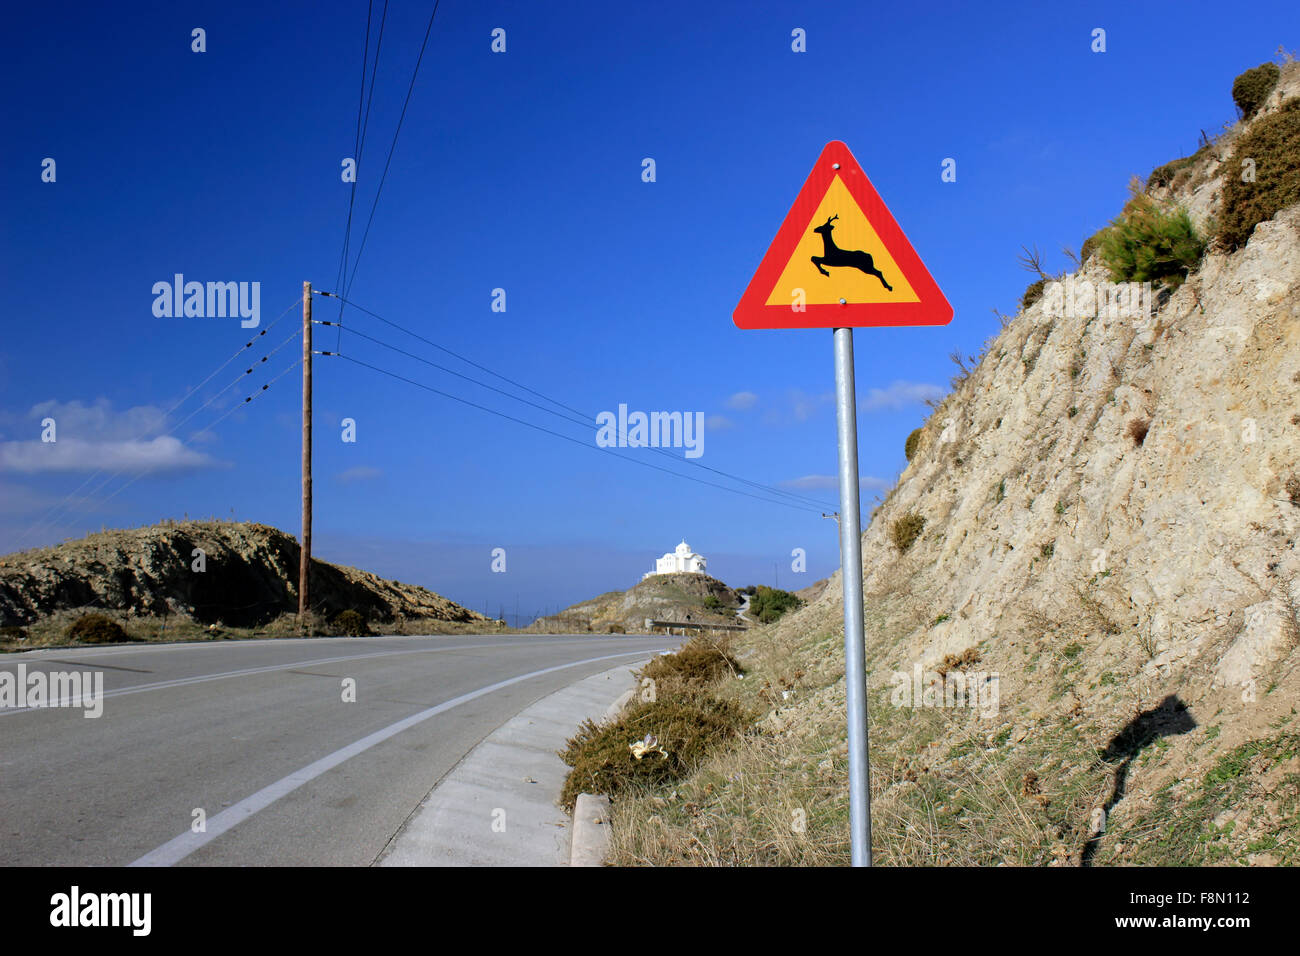 Large vue d'un Cerf(s) / d'avertissement de passage à niveau signalisation routière attention dans la ceinture d'autoroute. Myrina L'île de Lemnos, Grèce Banque D'Images